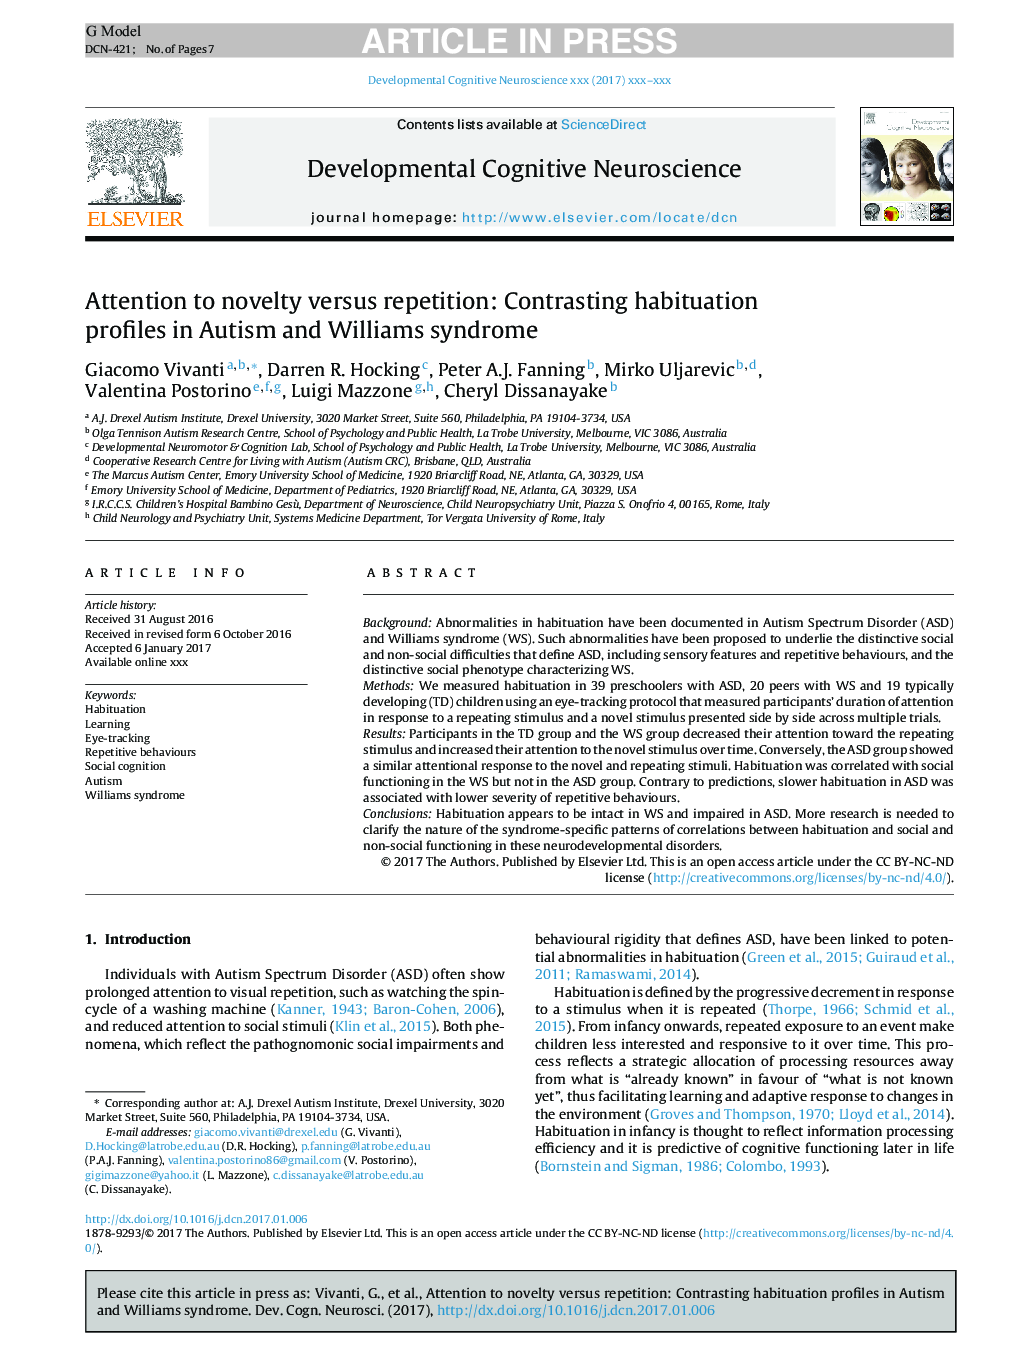 توجه به تازگی و تکرار: پروفایل های عادت سازنده در سندرم اوتیسم و ​​ویلیامز 